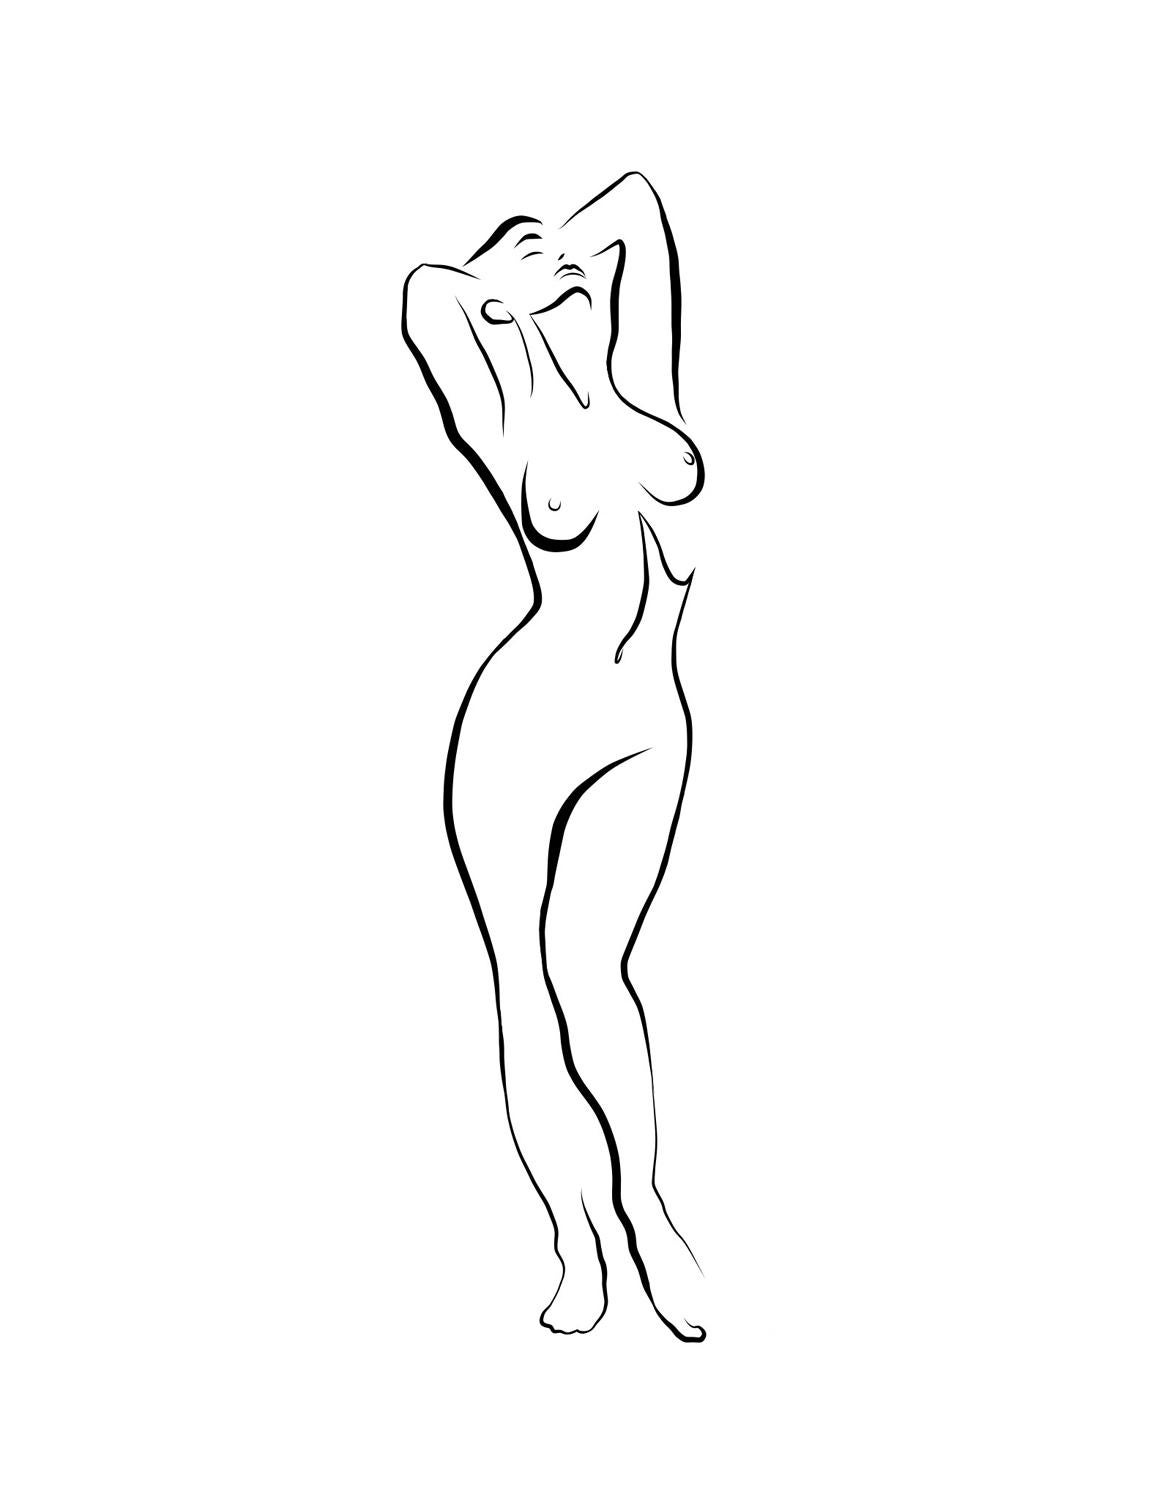 Michael Binkley Nude Print - Haiku #34, 1/50 - Digital Vector Drawing Standing Female Nude Woman Figure